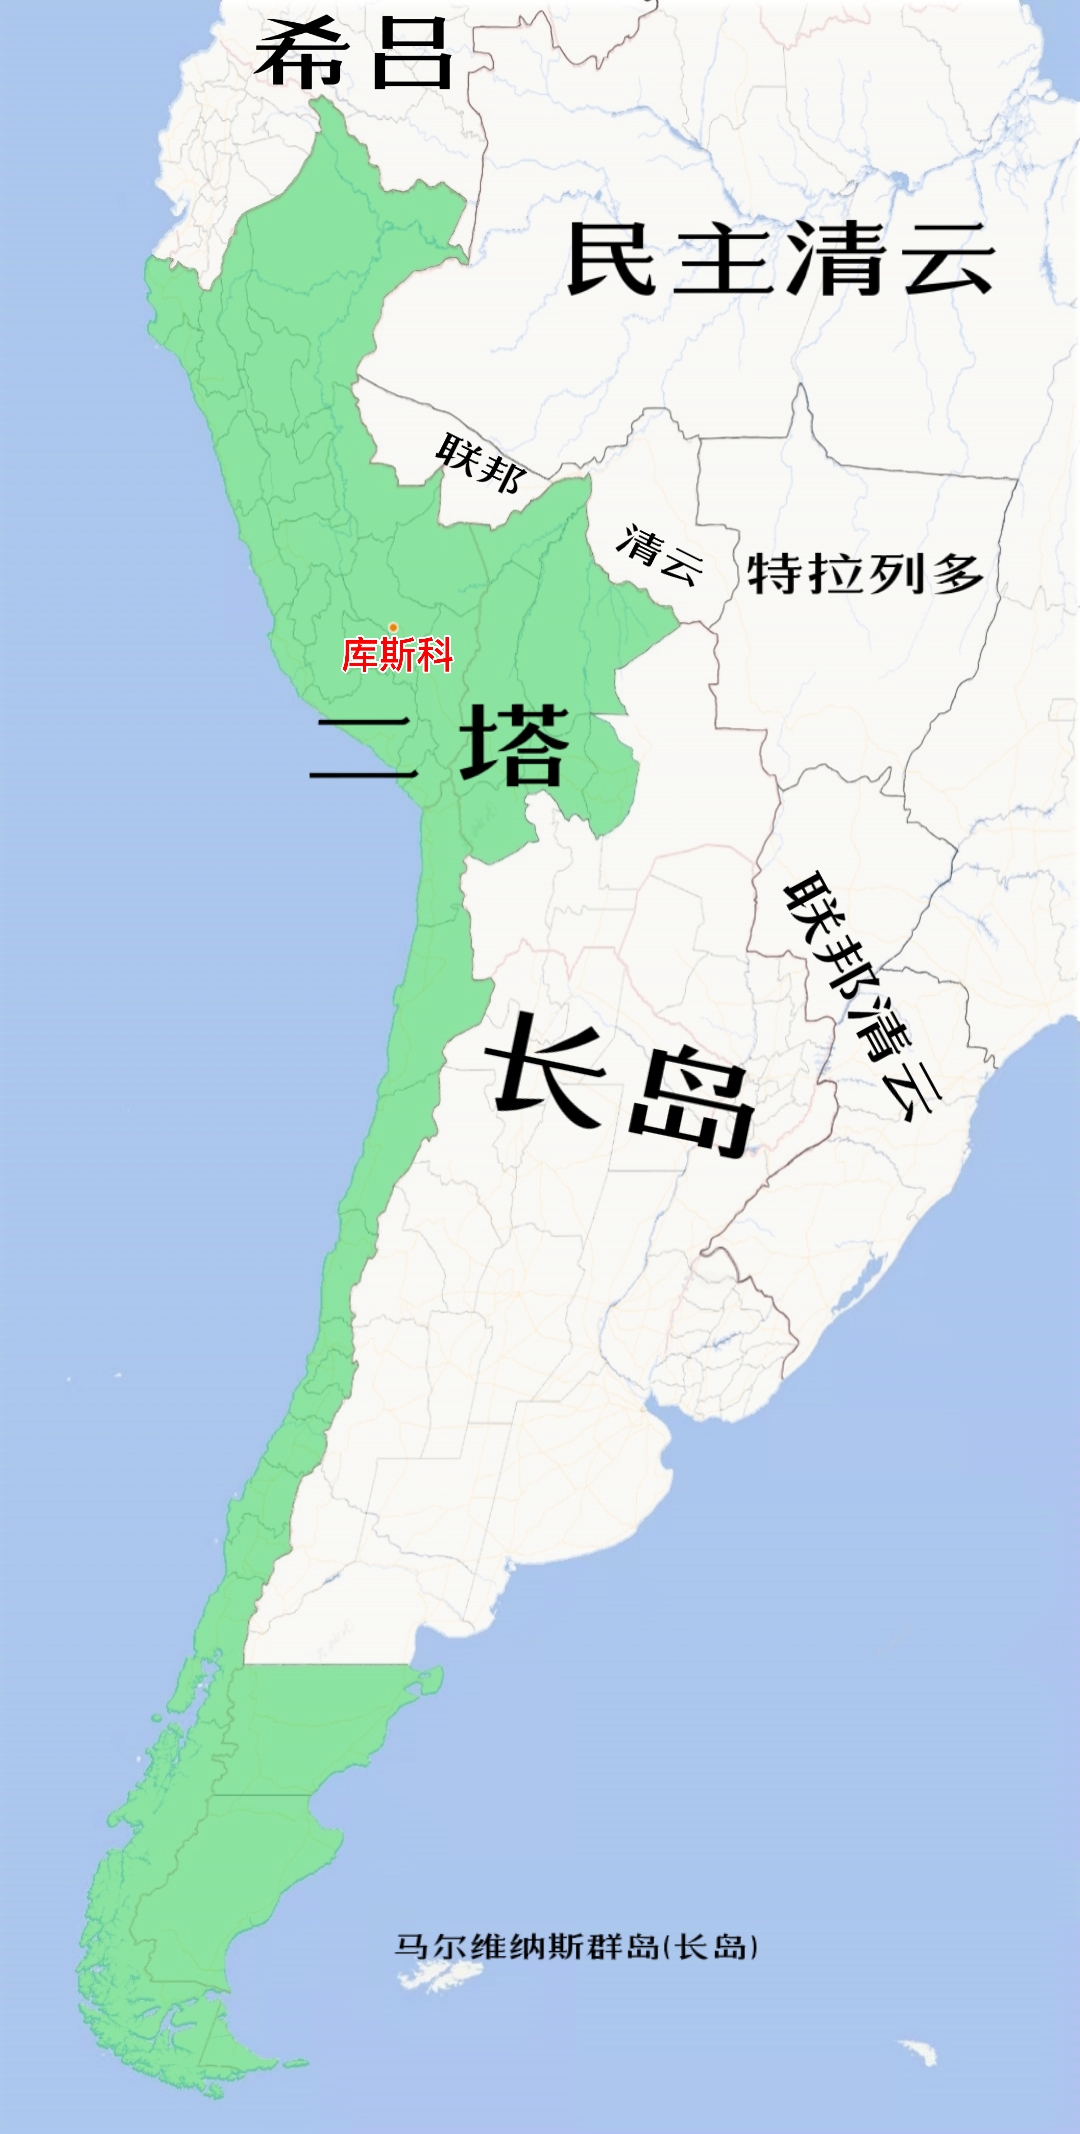 第二塔万汀苏尤联邦共和国在南美洲的位置(绿色部分)